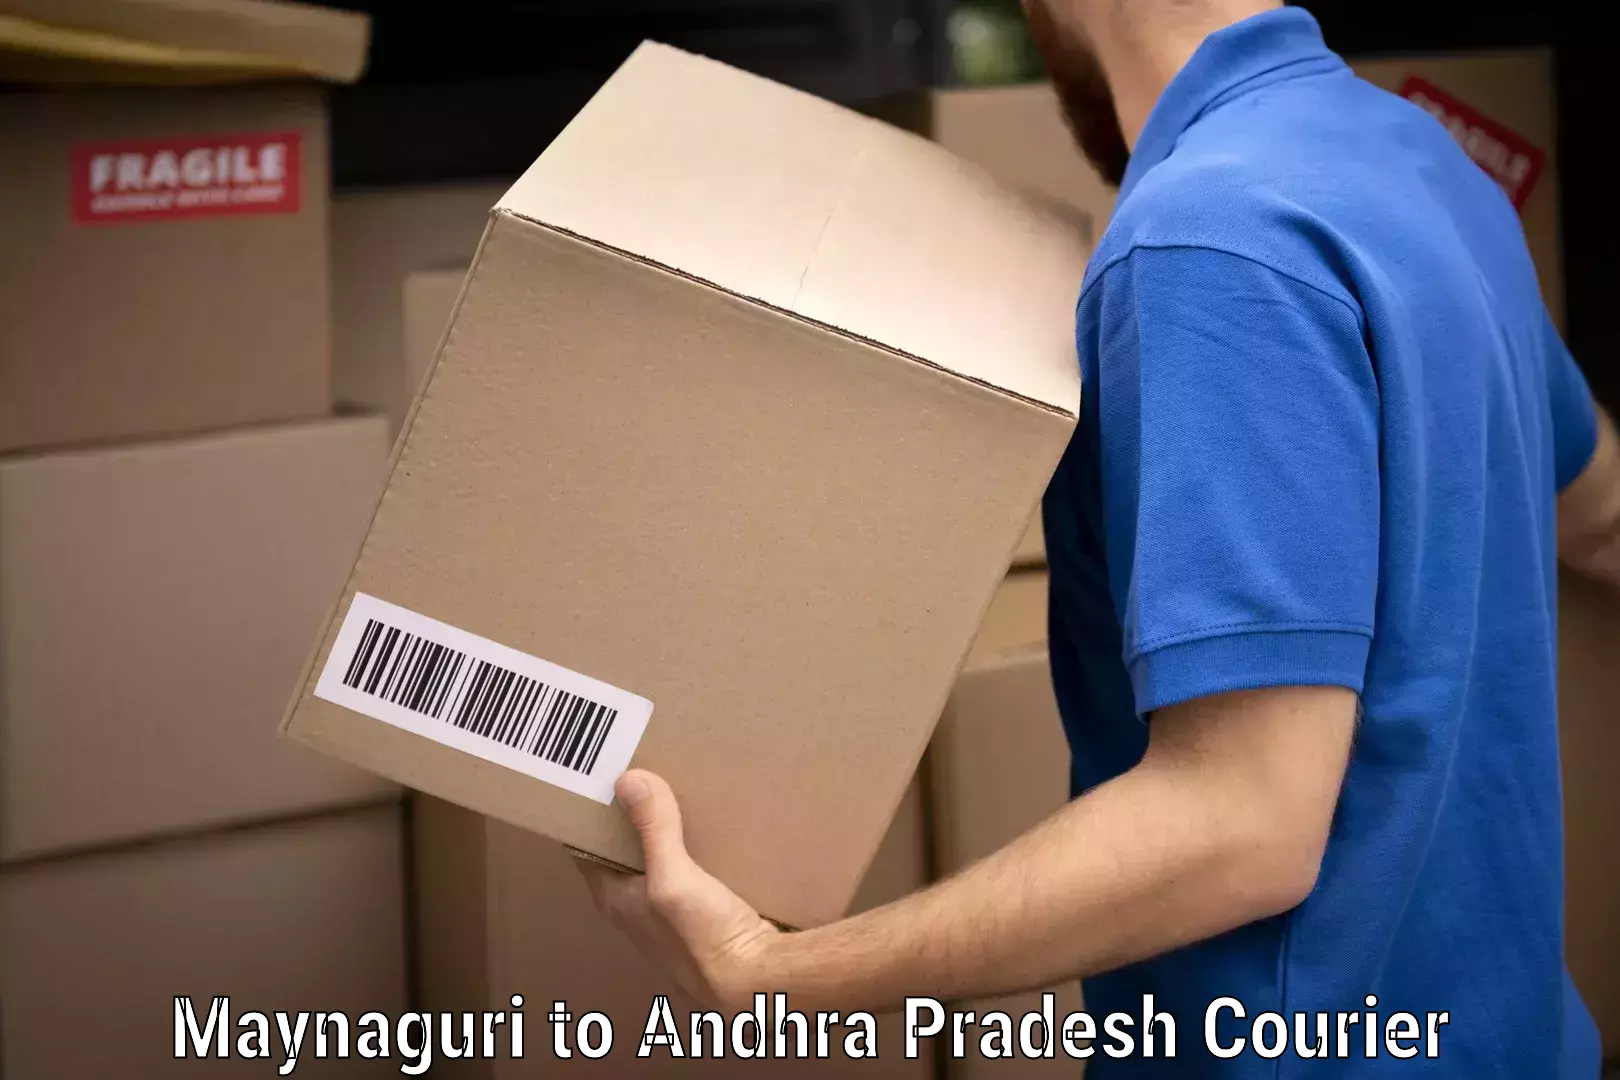 Furniture moving services Maynaguri to Andhra Pradesh